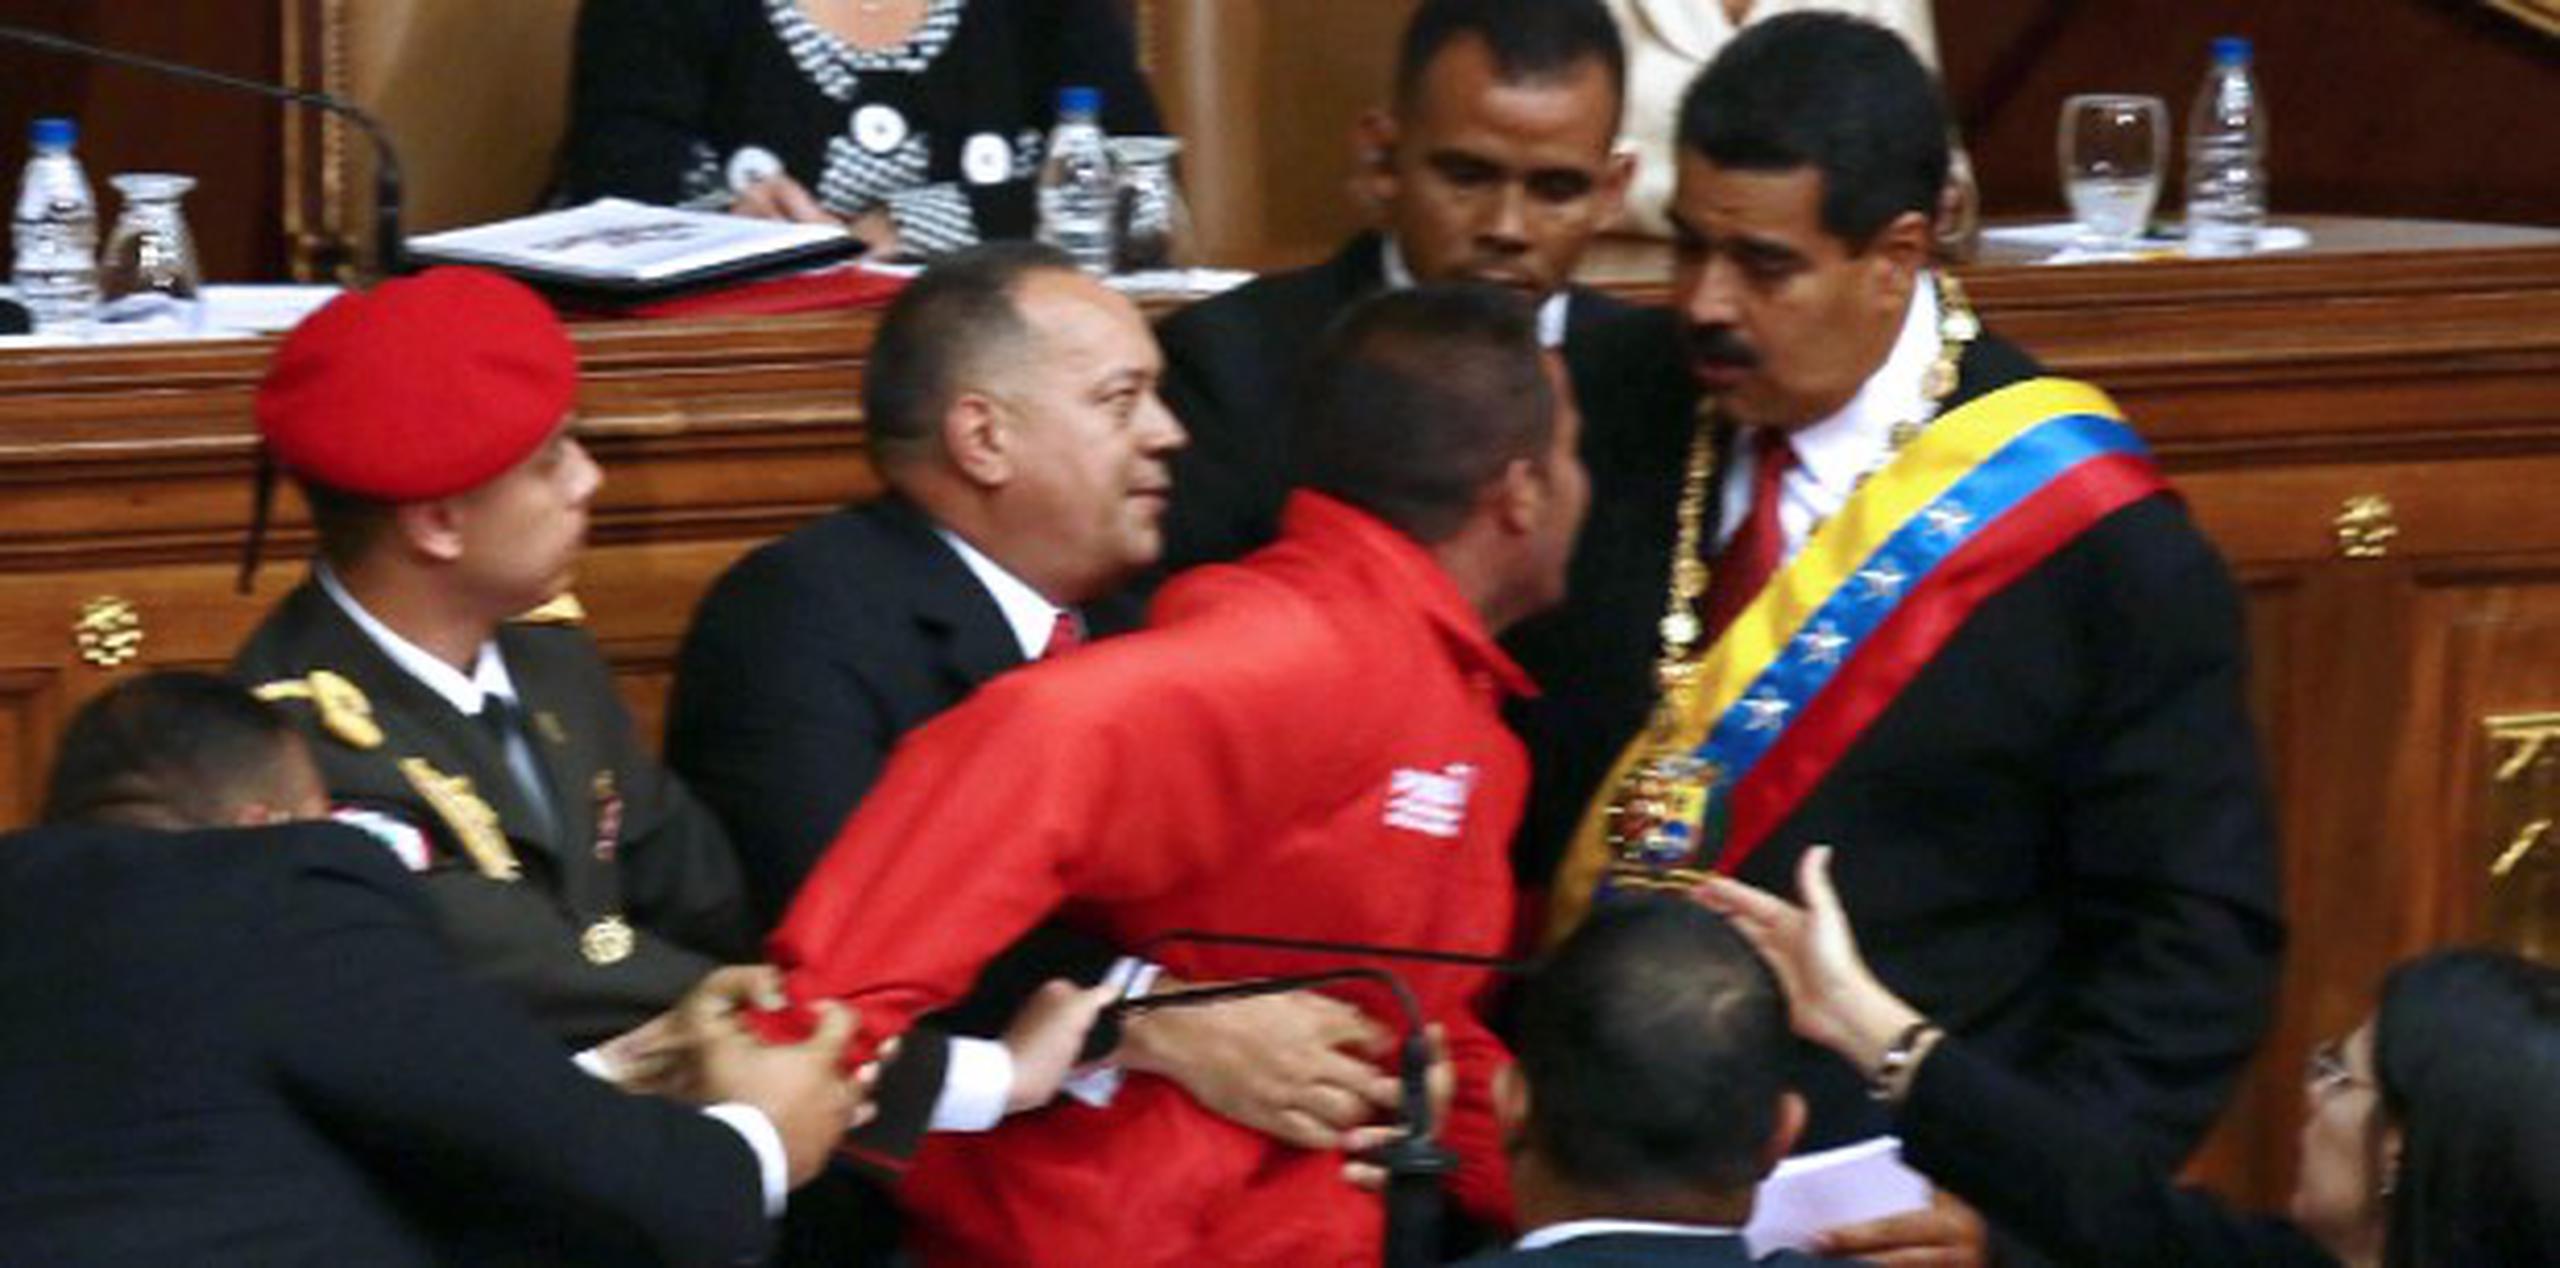 El desconocido tomó el micrófono desde el que hablaba Maduro y gritó "¡Nicolás!, ¡Nicolás!", cuando tres hombres de seguridad se abalanzaron sobre él y lo sacaron del recinto.
 (AFP/Leo Ramirez)